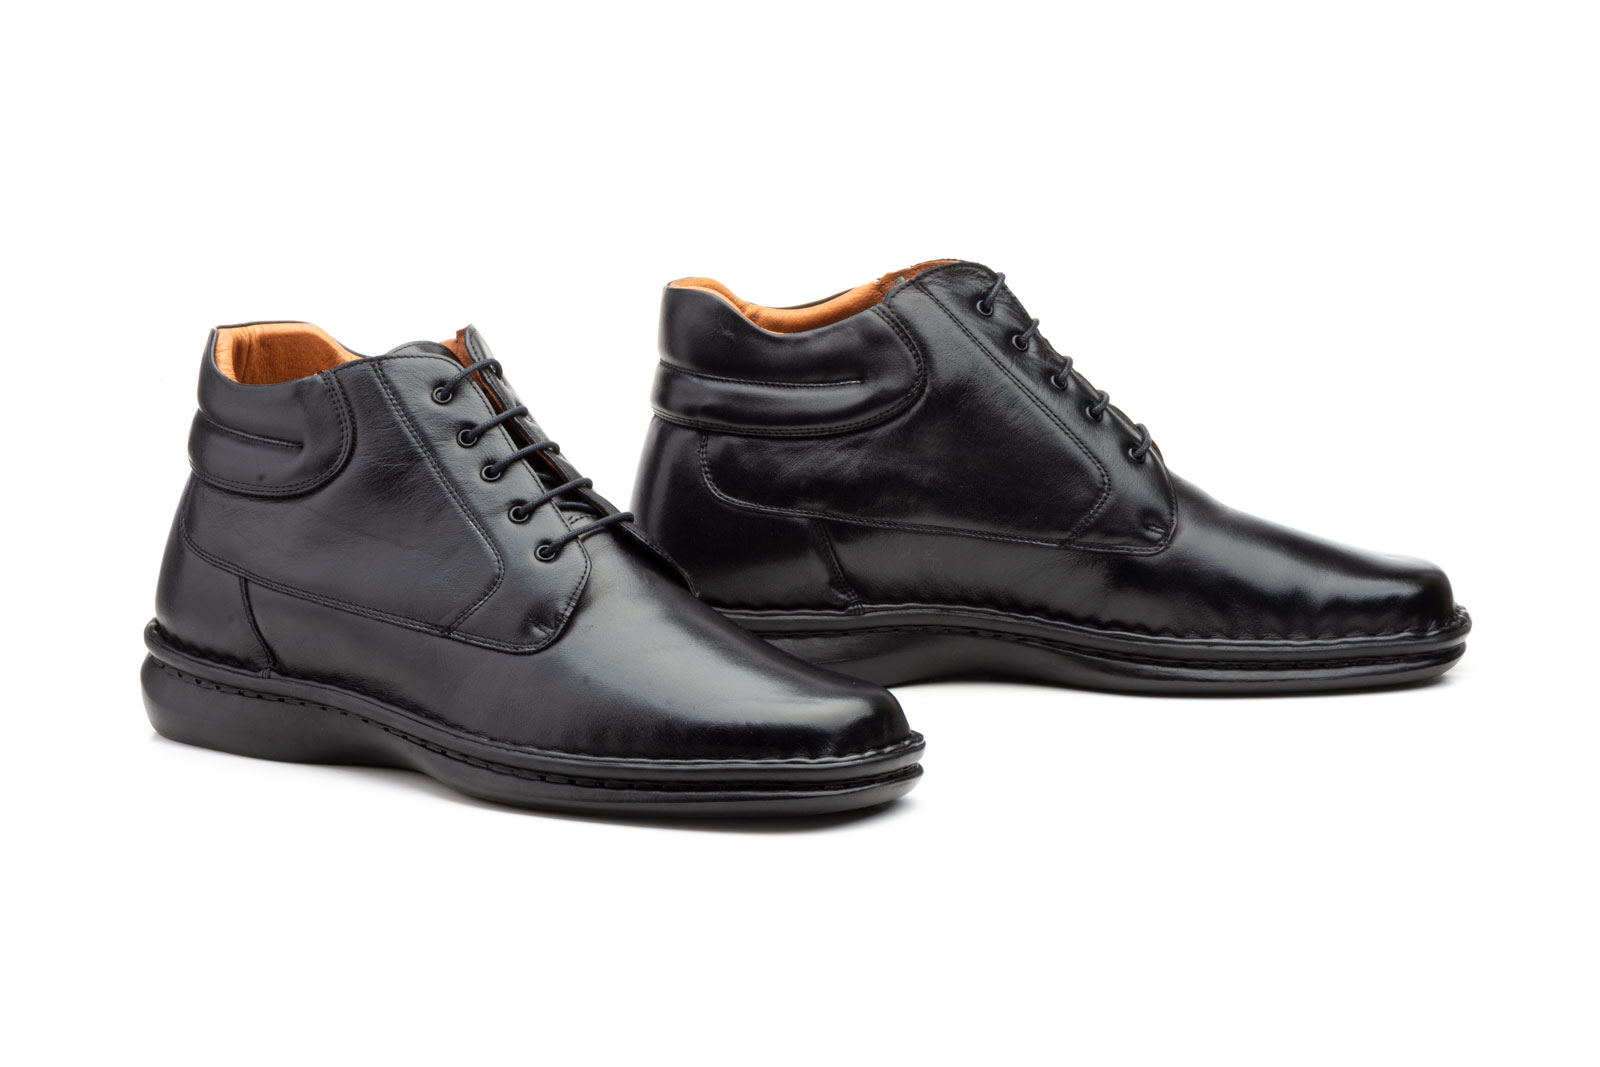 Zapatos Hombre Piel Negro Cordones Tallas Grandes  -  Ref. 60108 XXL Negro